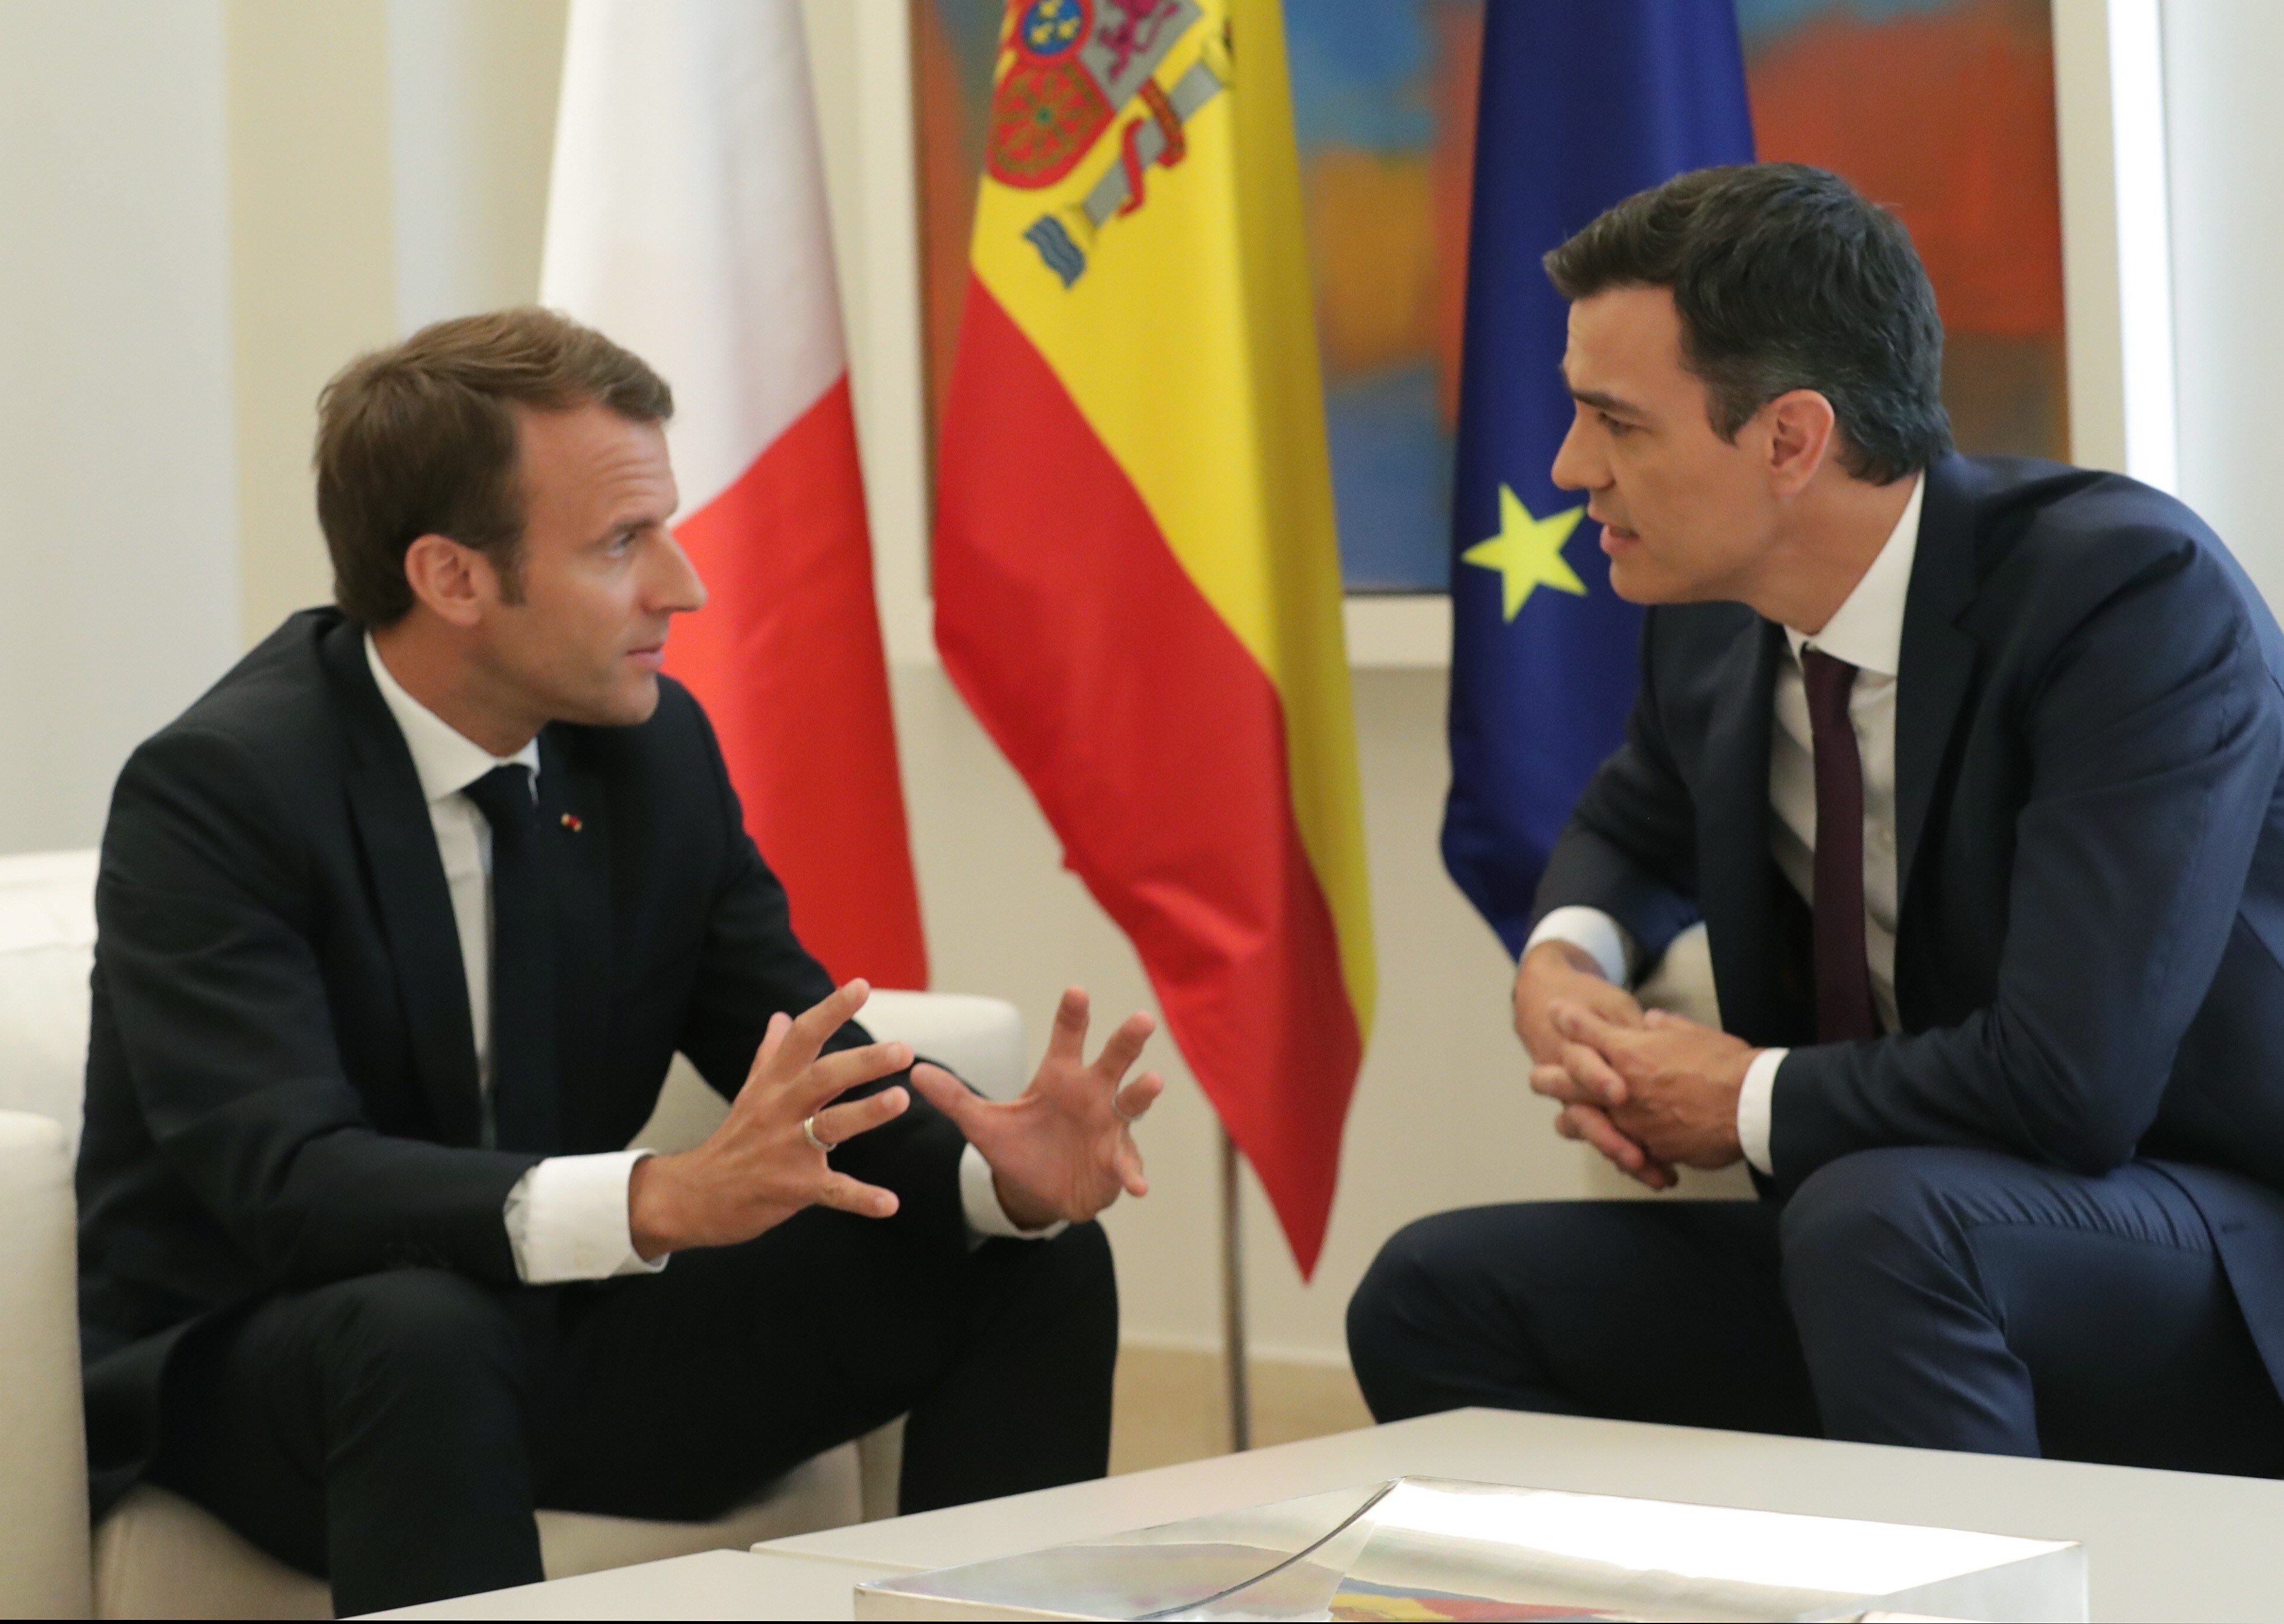 Macron cuestiona la cuarentena impuesta por España: "Ni eficaz, ni realista"